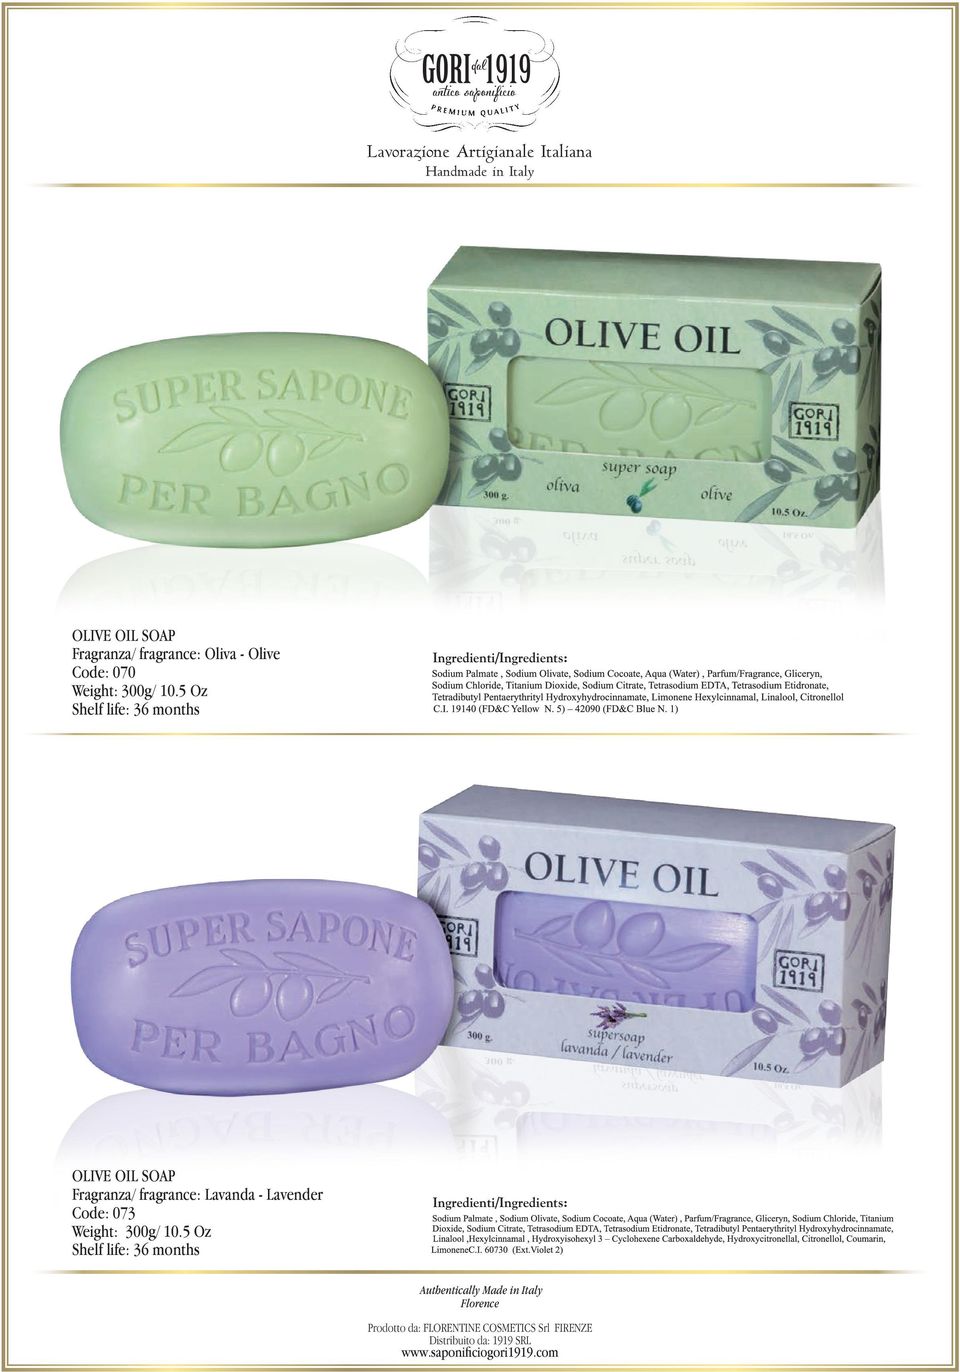 5 oz olive oil soap Fragranza/ fragrance: